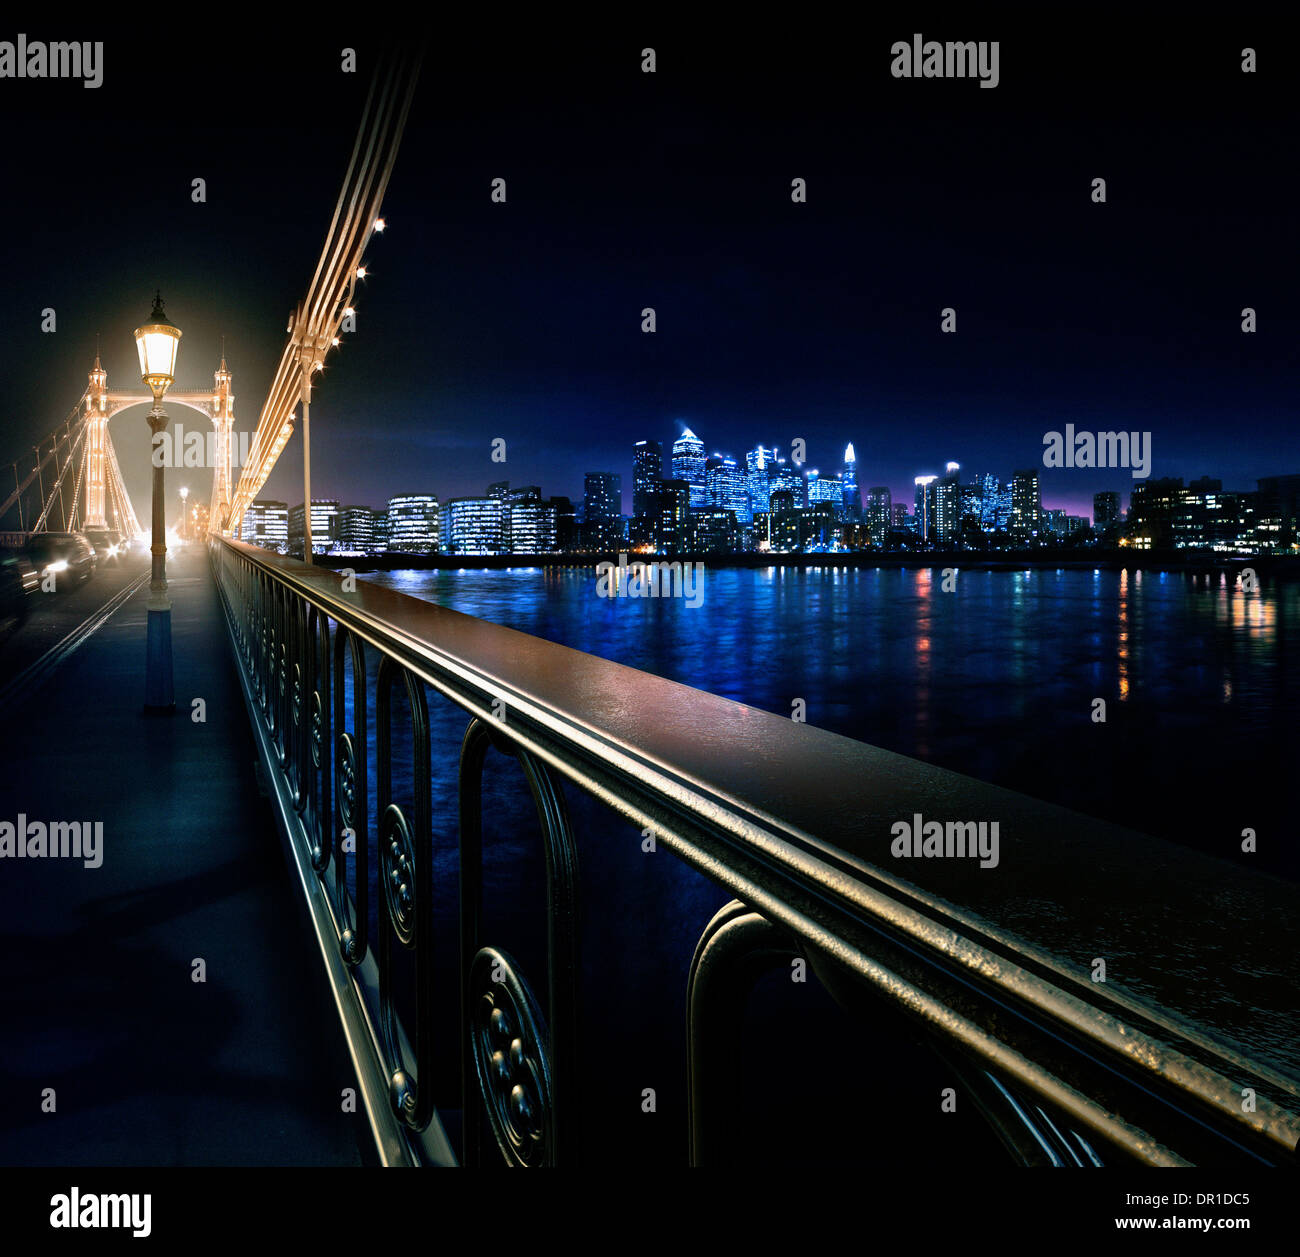 Main courante des urban bridge at night, London, Royaume-Uni Banque D'Images